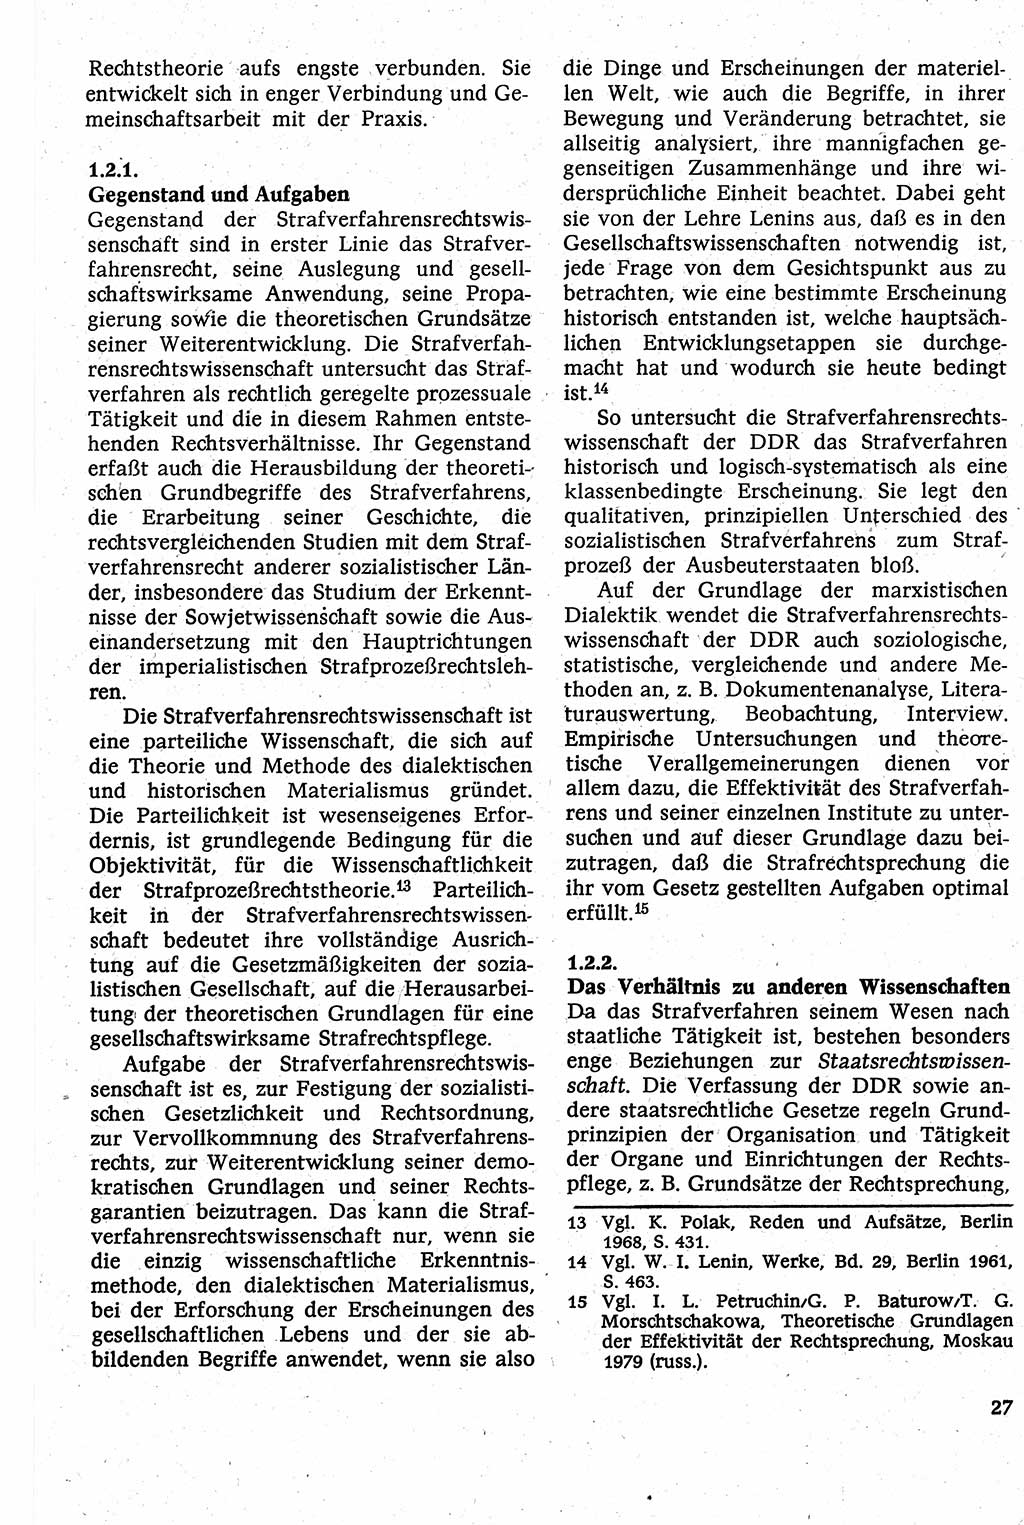 Strafverfahrensrecht [Deutsche Demokratische Republik (DDR)], Lehrbuch 1982, Seite 27 (Strafverf.-R. DDR Lb. 1982, S. 27)